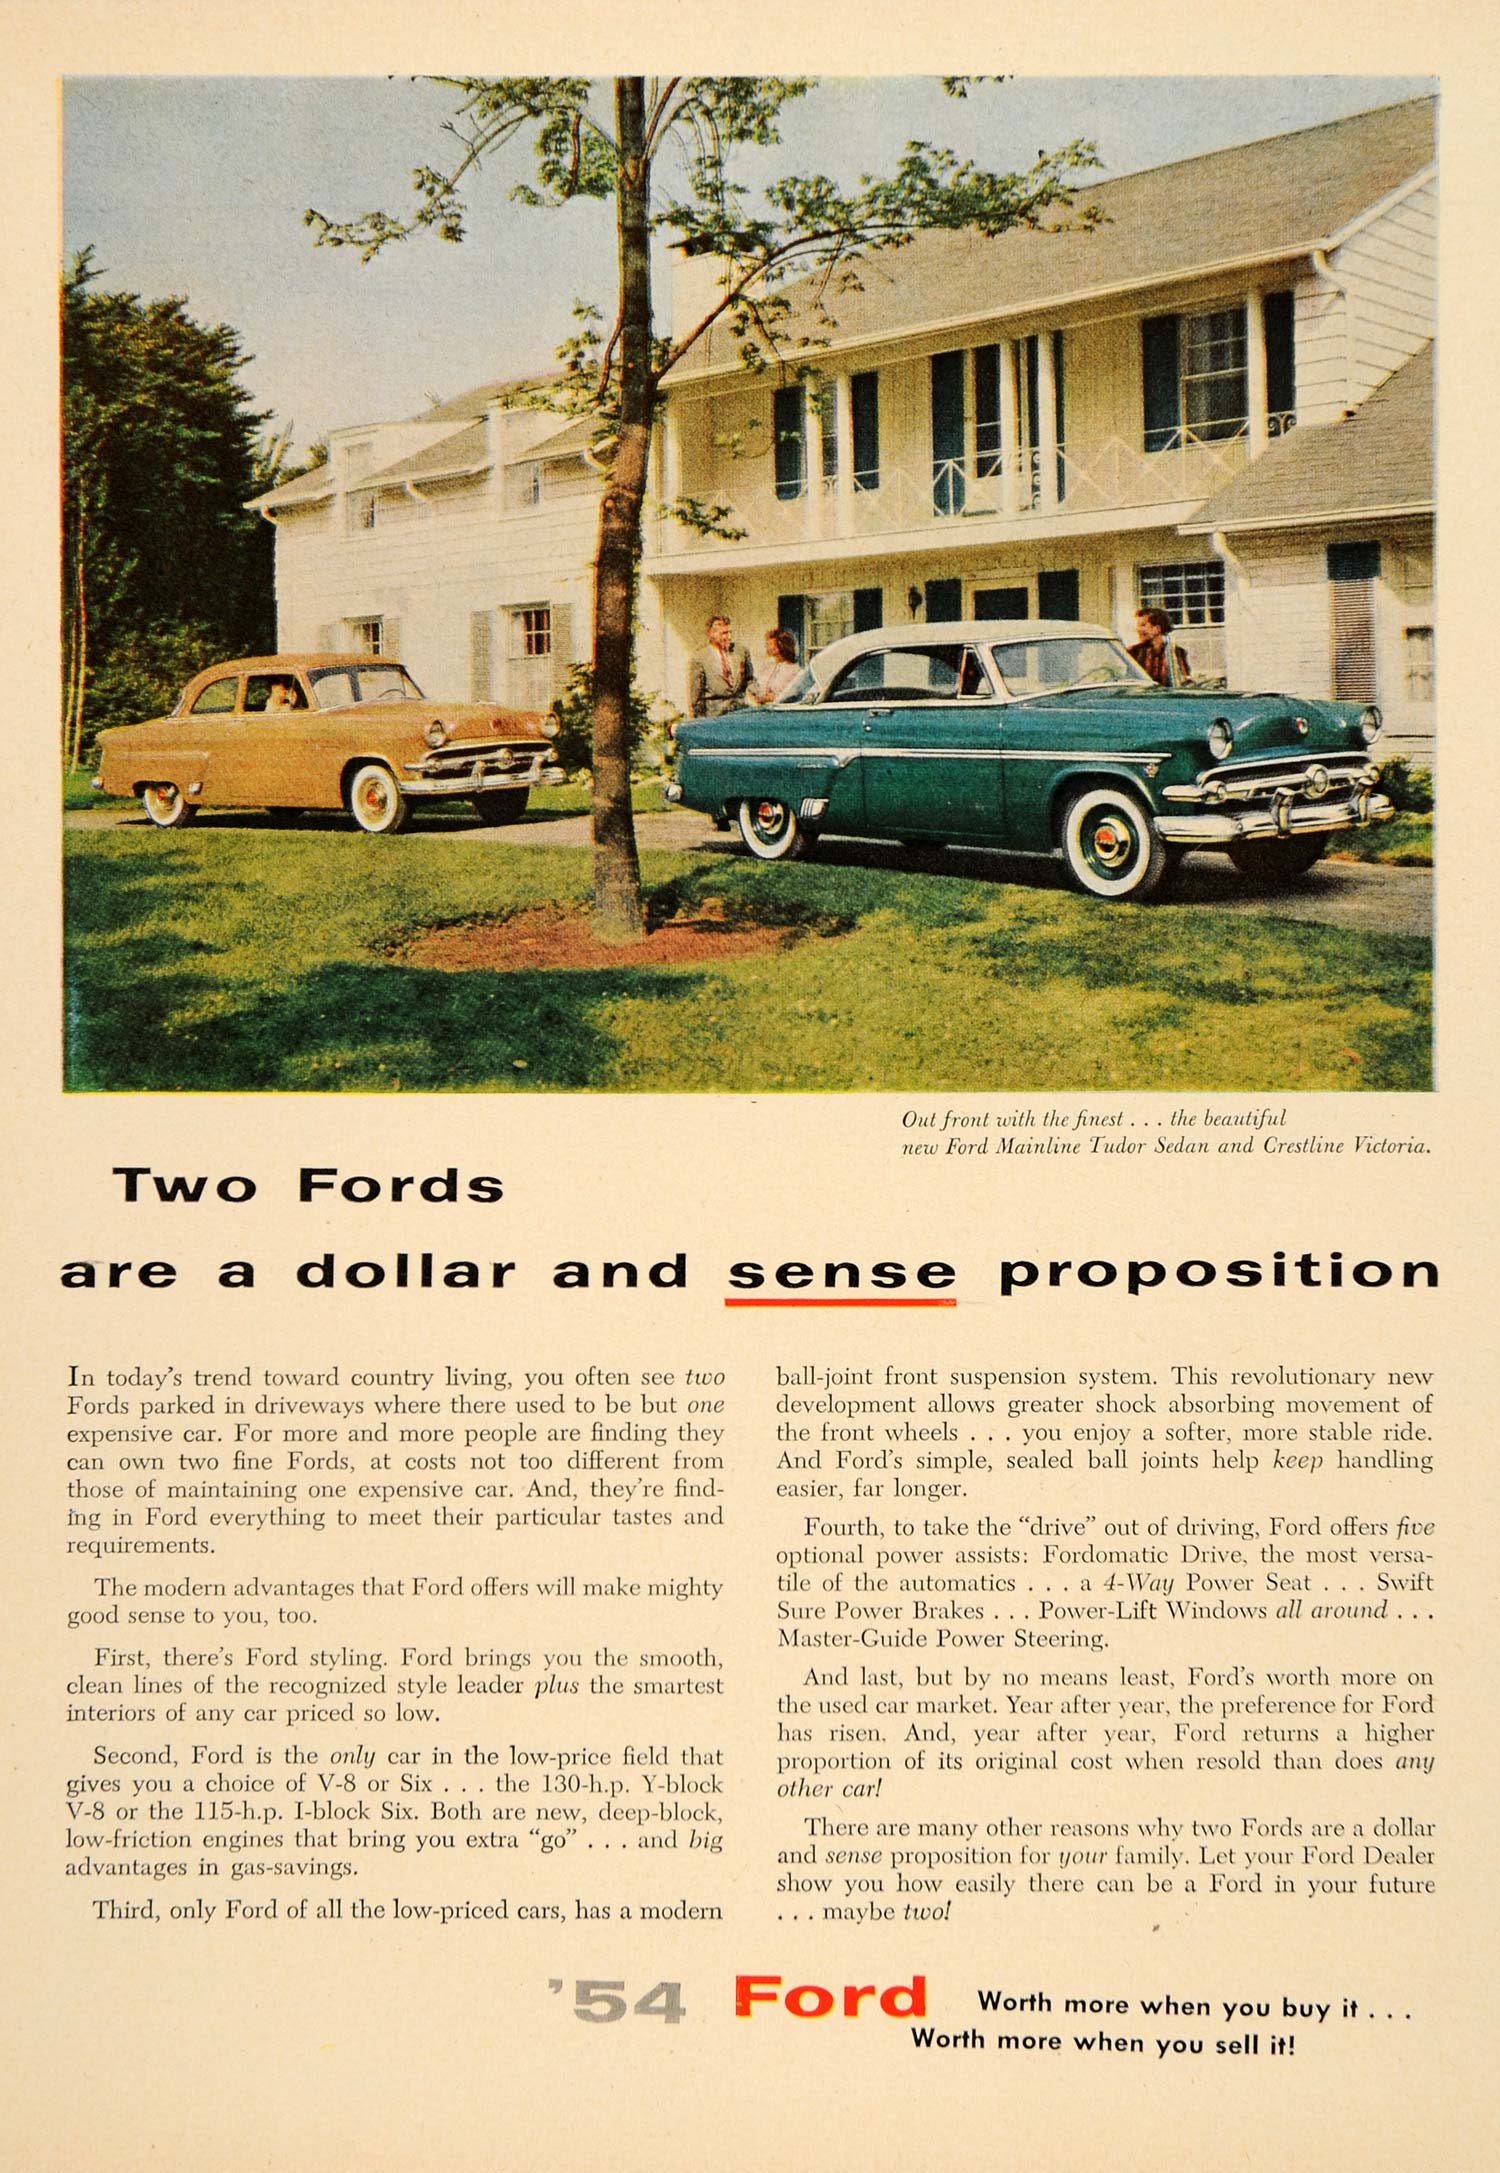 1954 Ad Ford Mainline Tudor Sedan Crestline Victoria - ORIGINAL ADVERTISING TM3